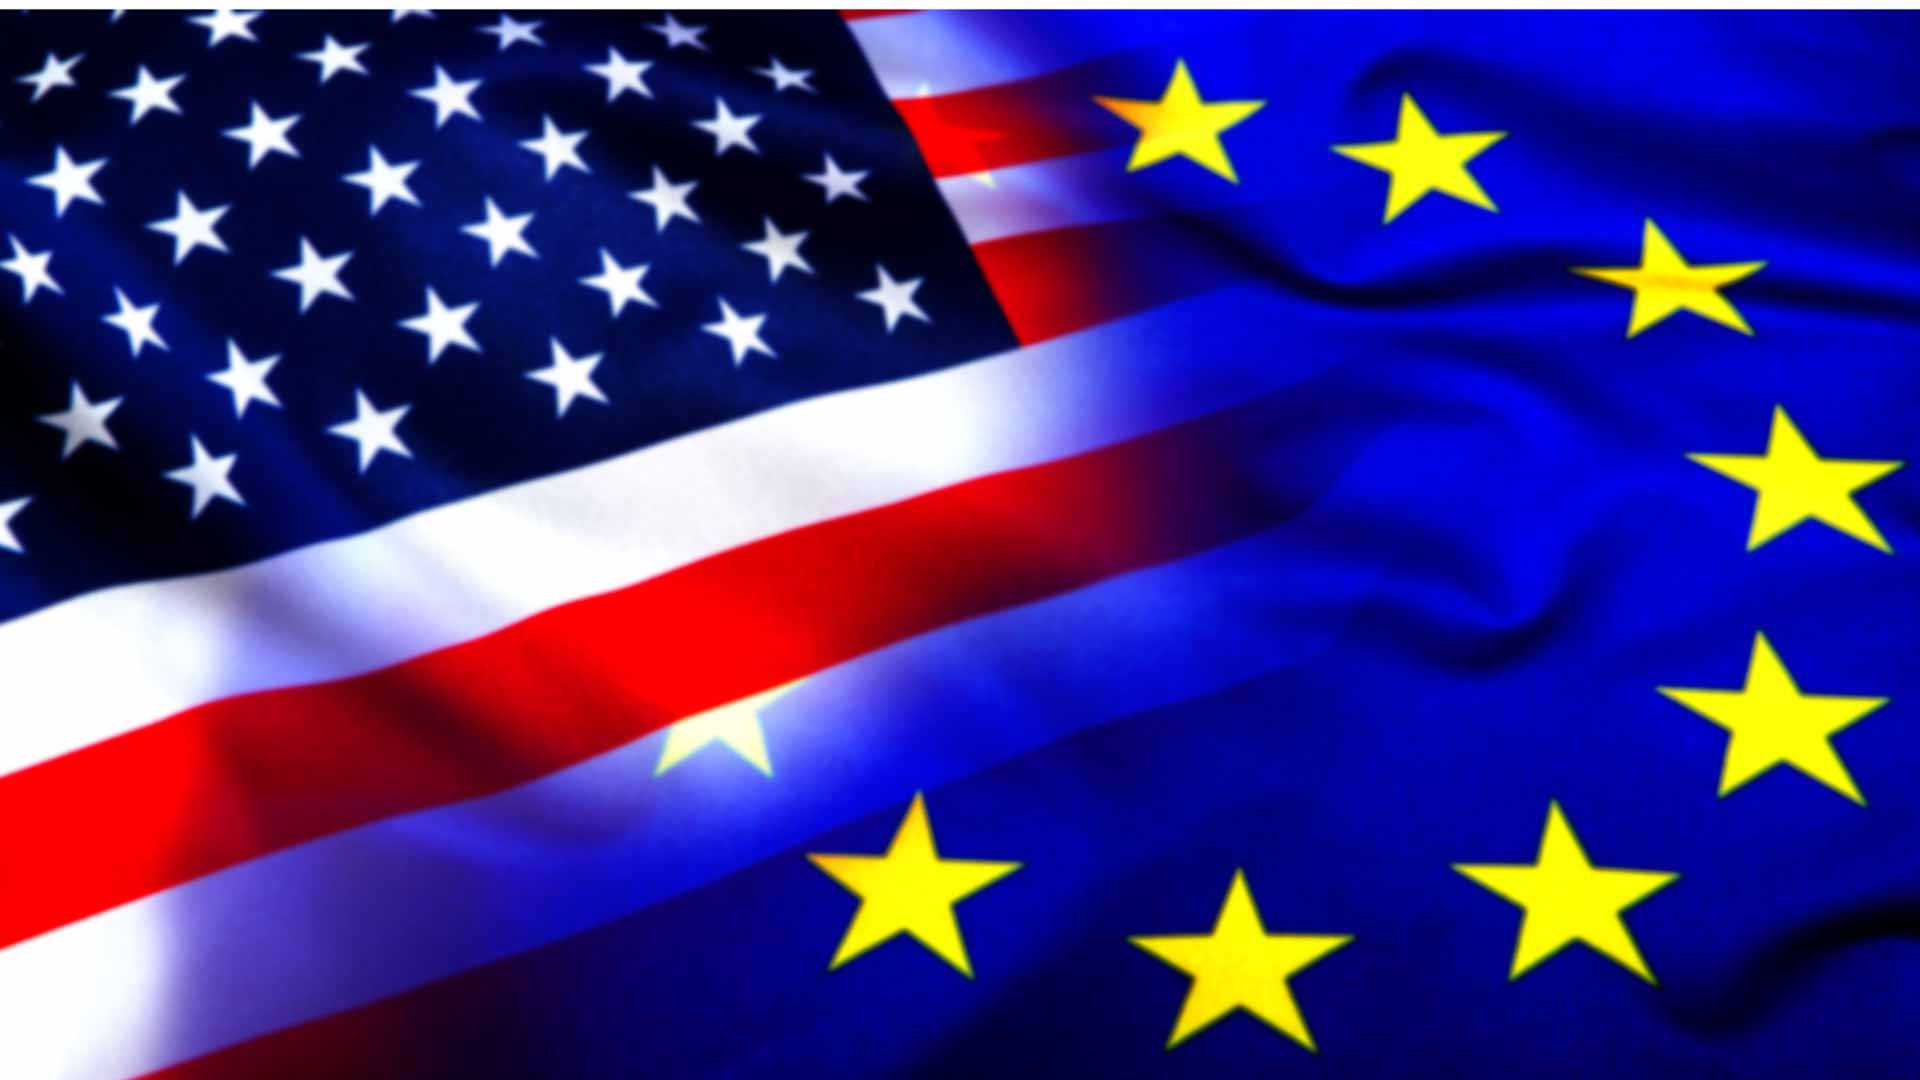 EU-USA